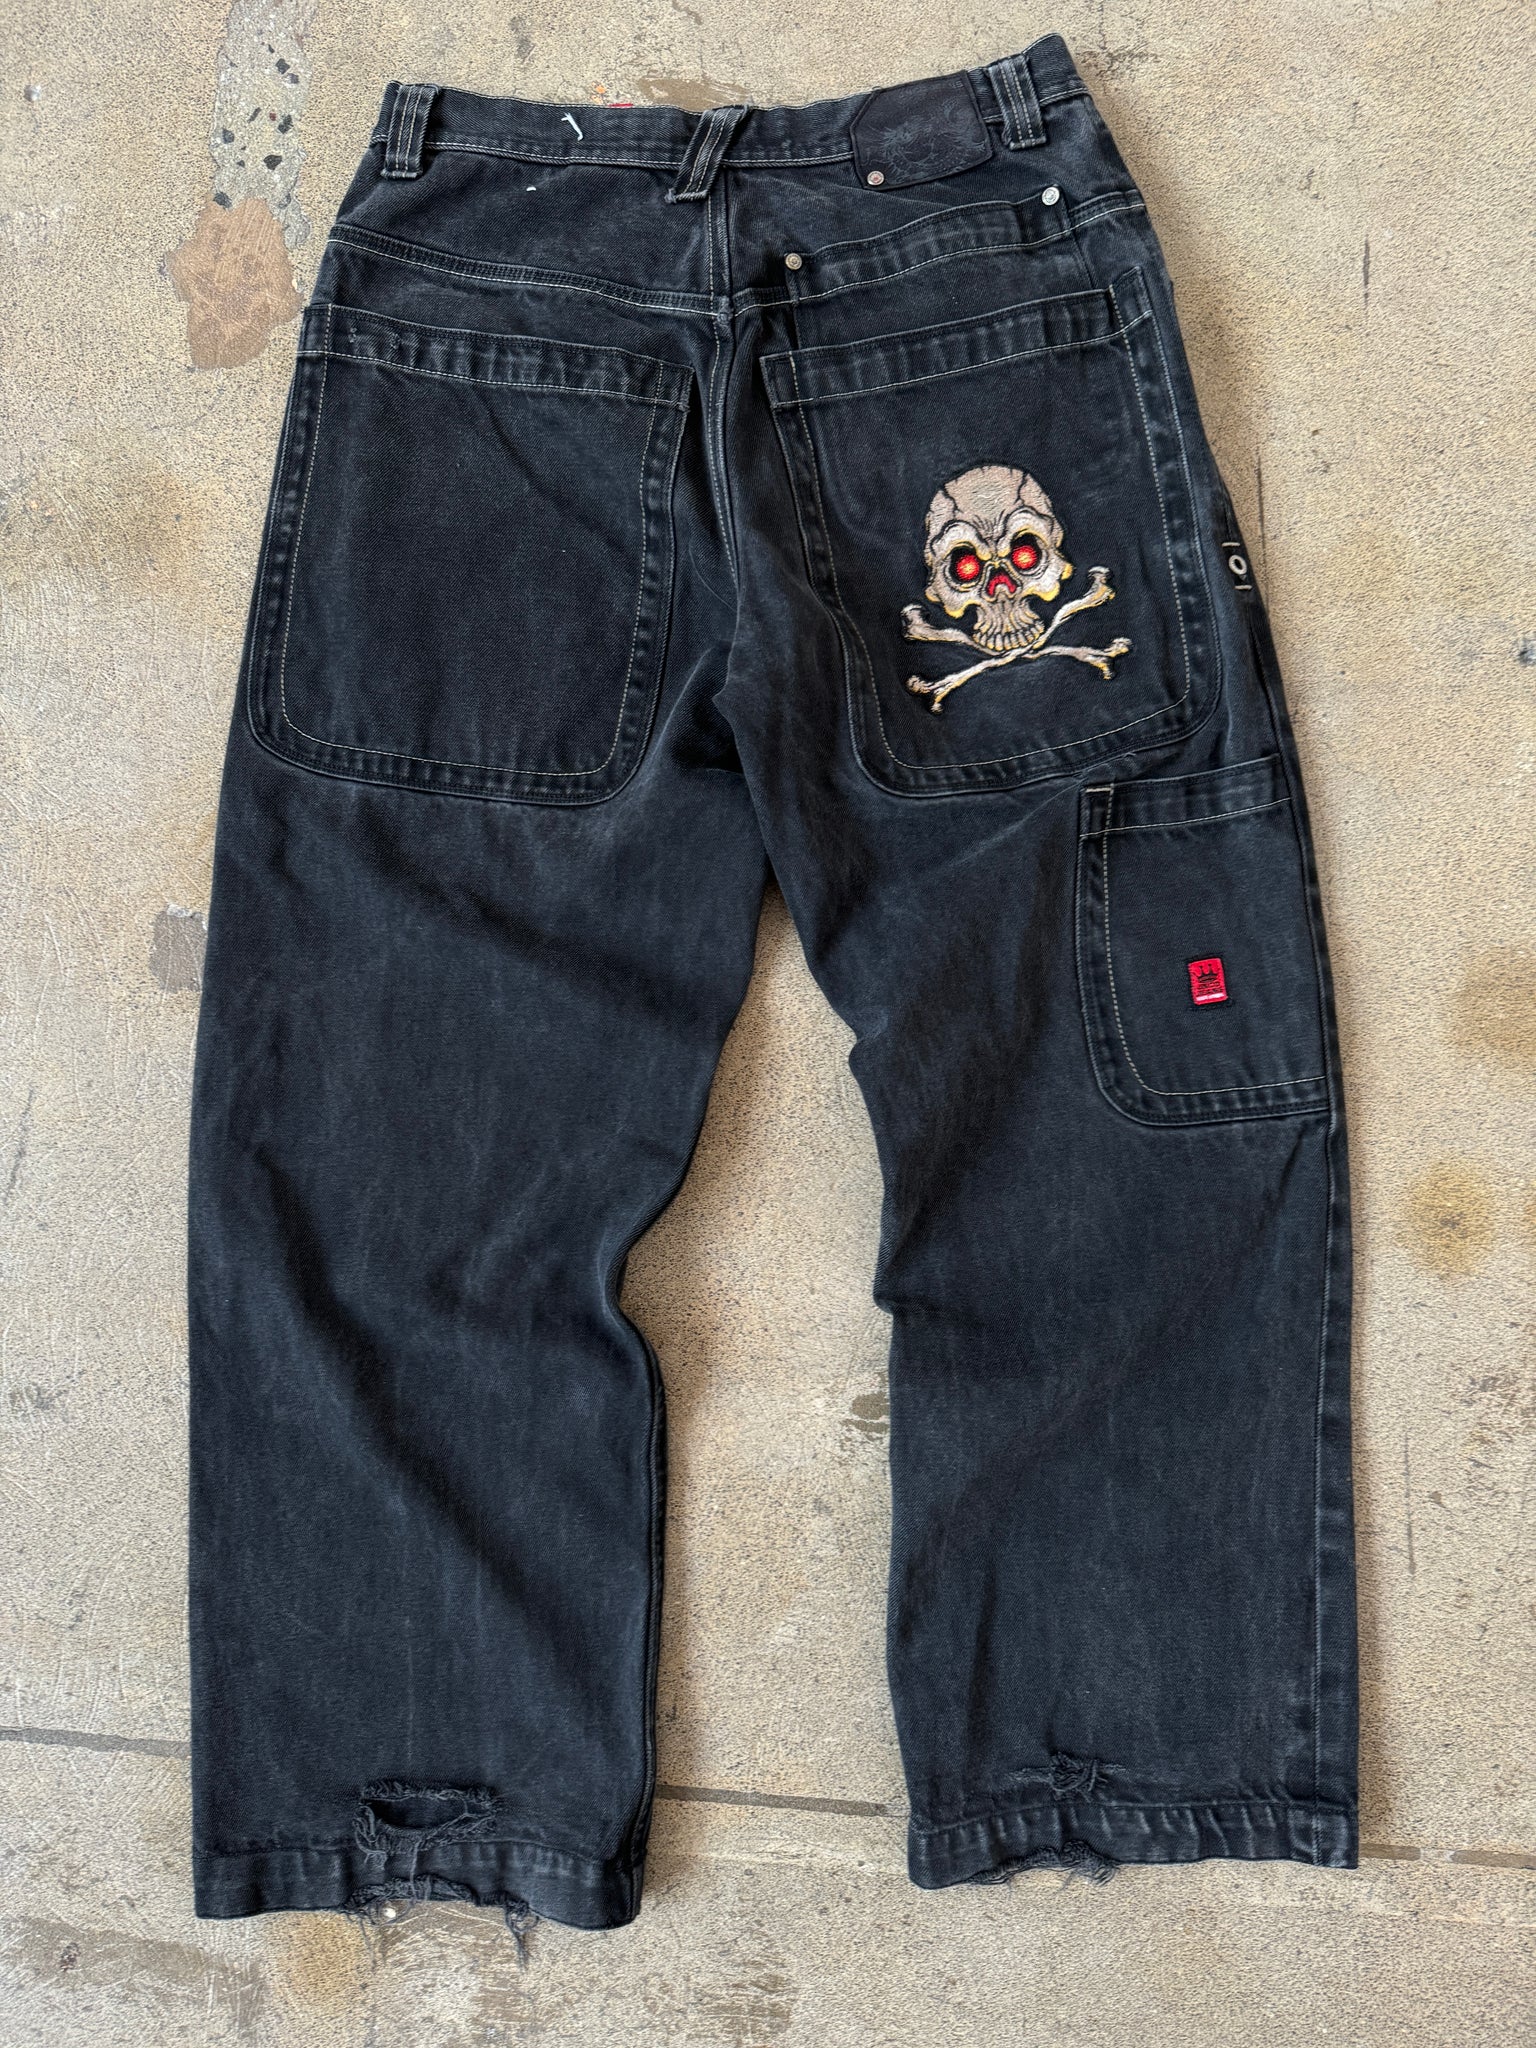 Vintage JNCO Skull Jeans (32)